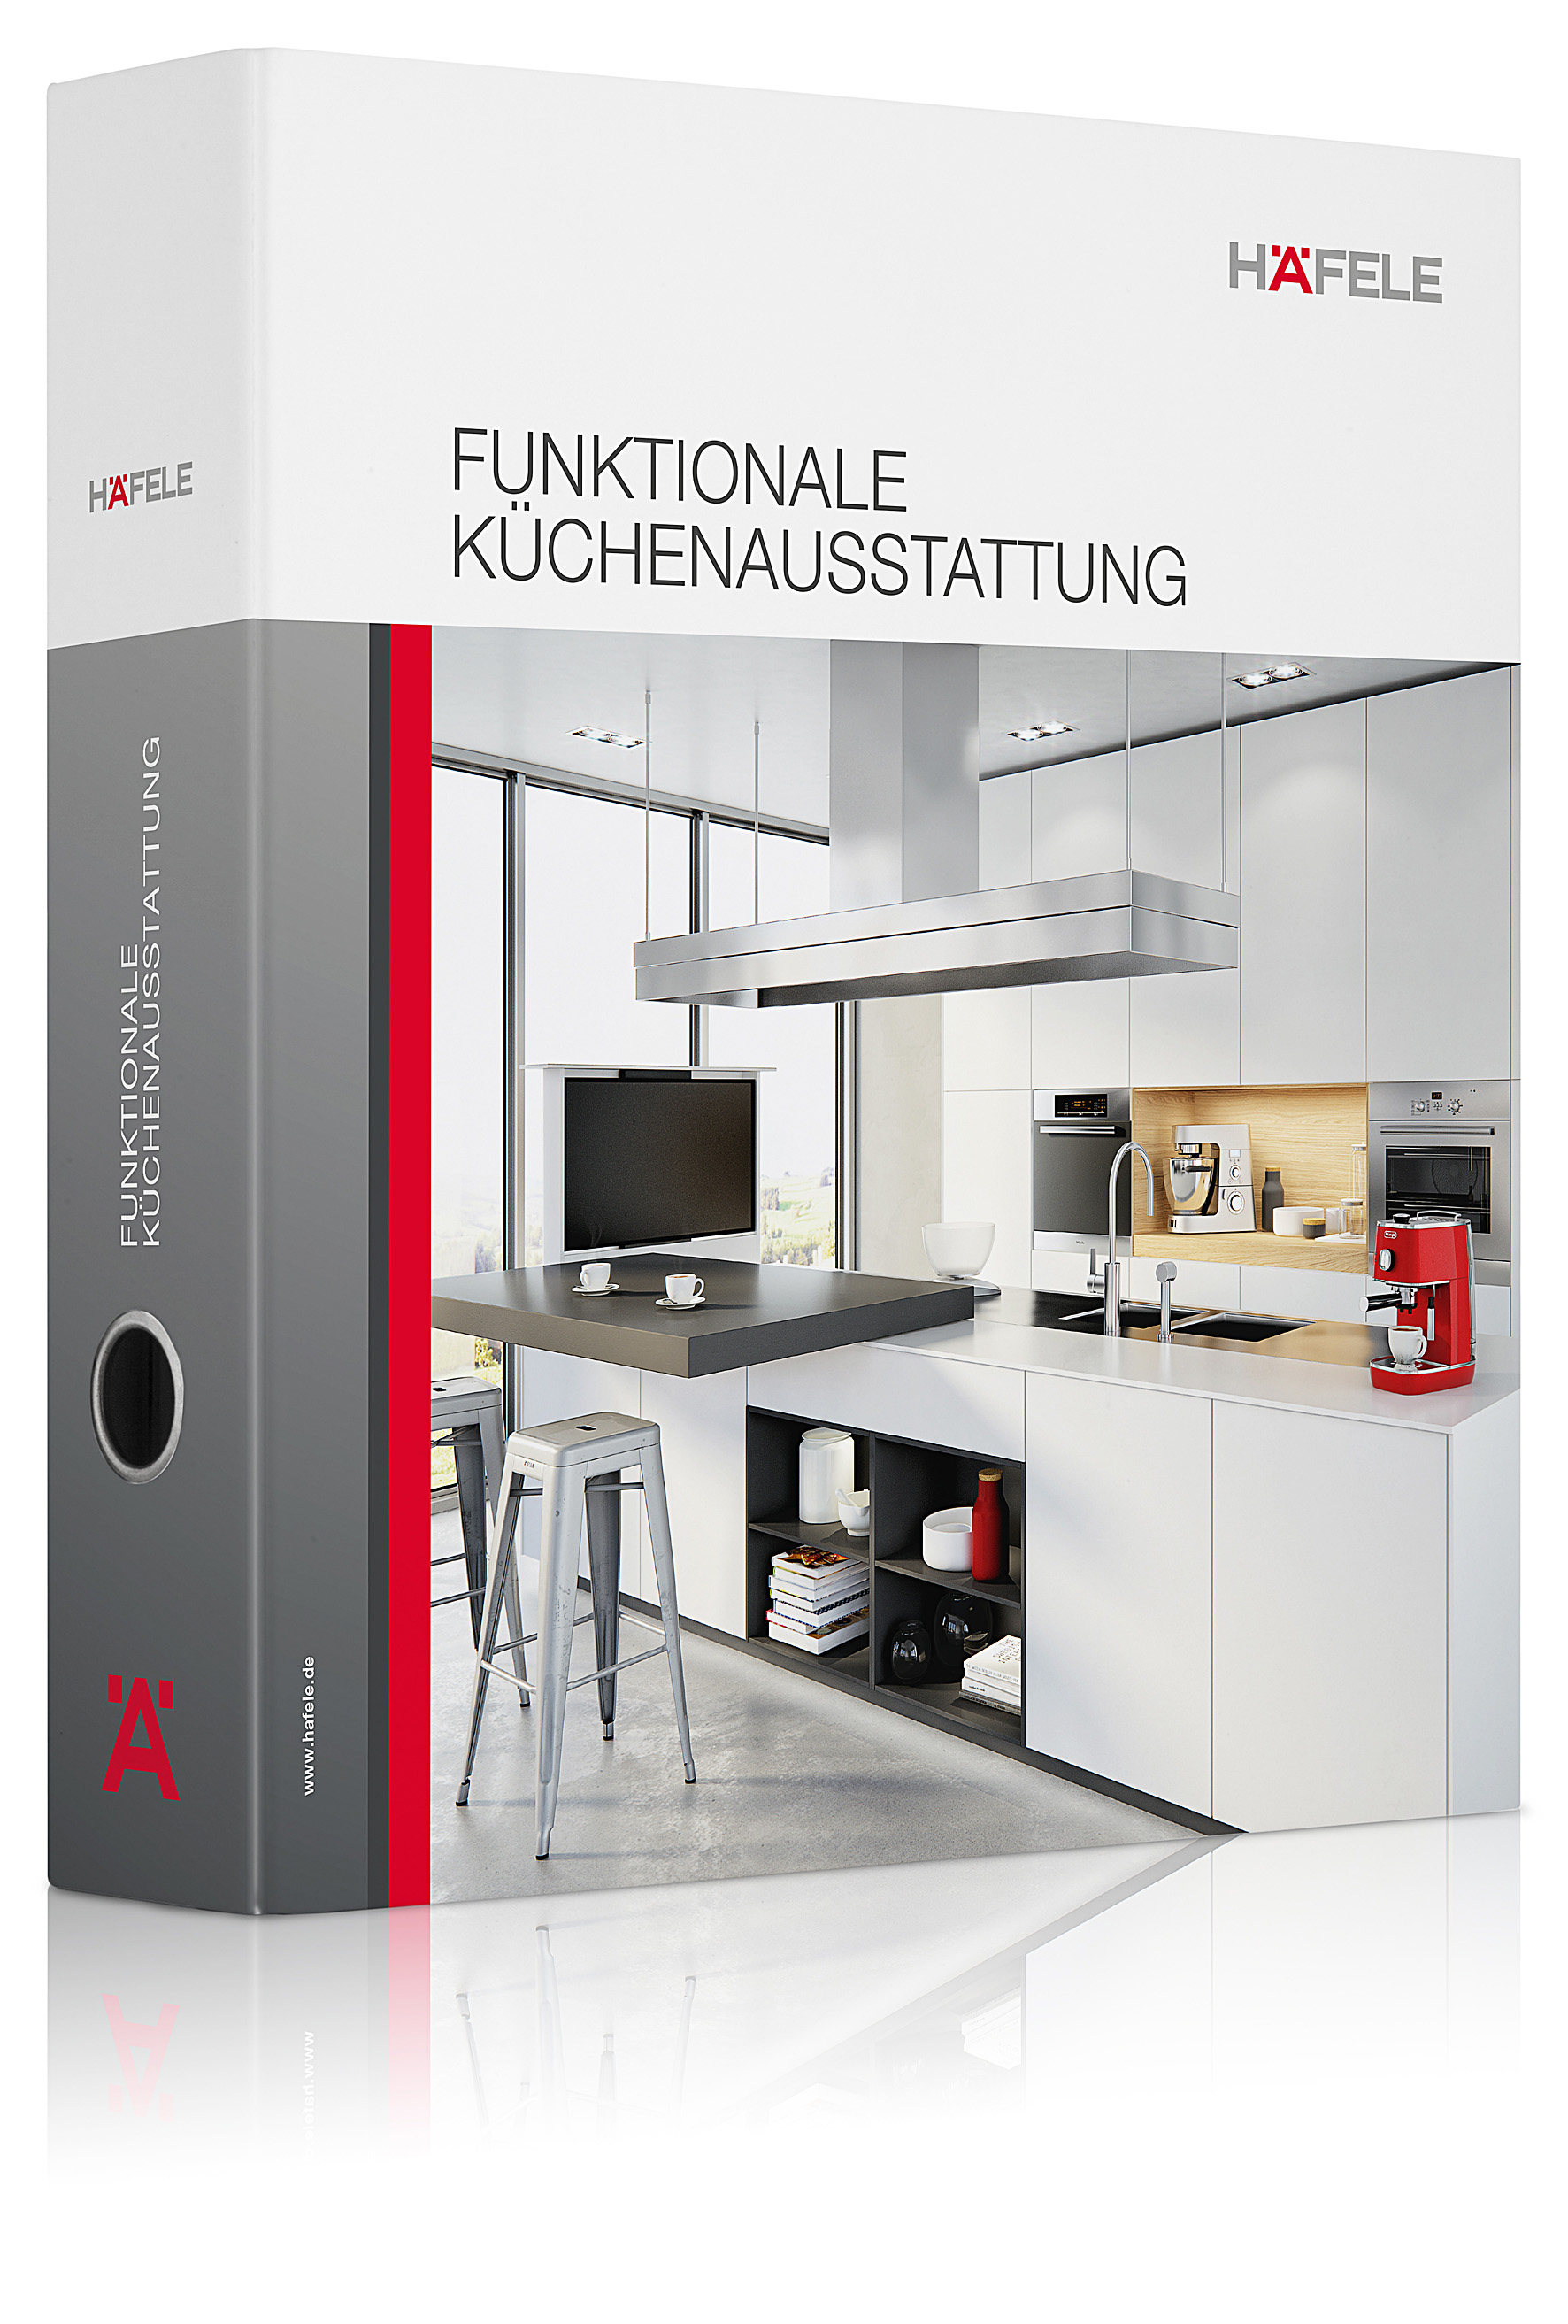 Katalog funktionale Küchenausstattung 